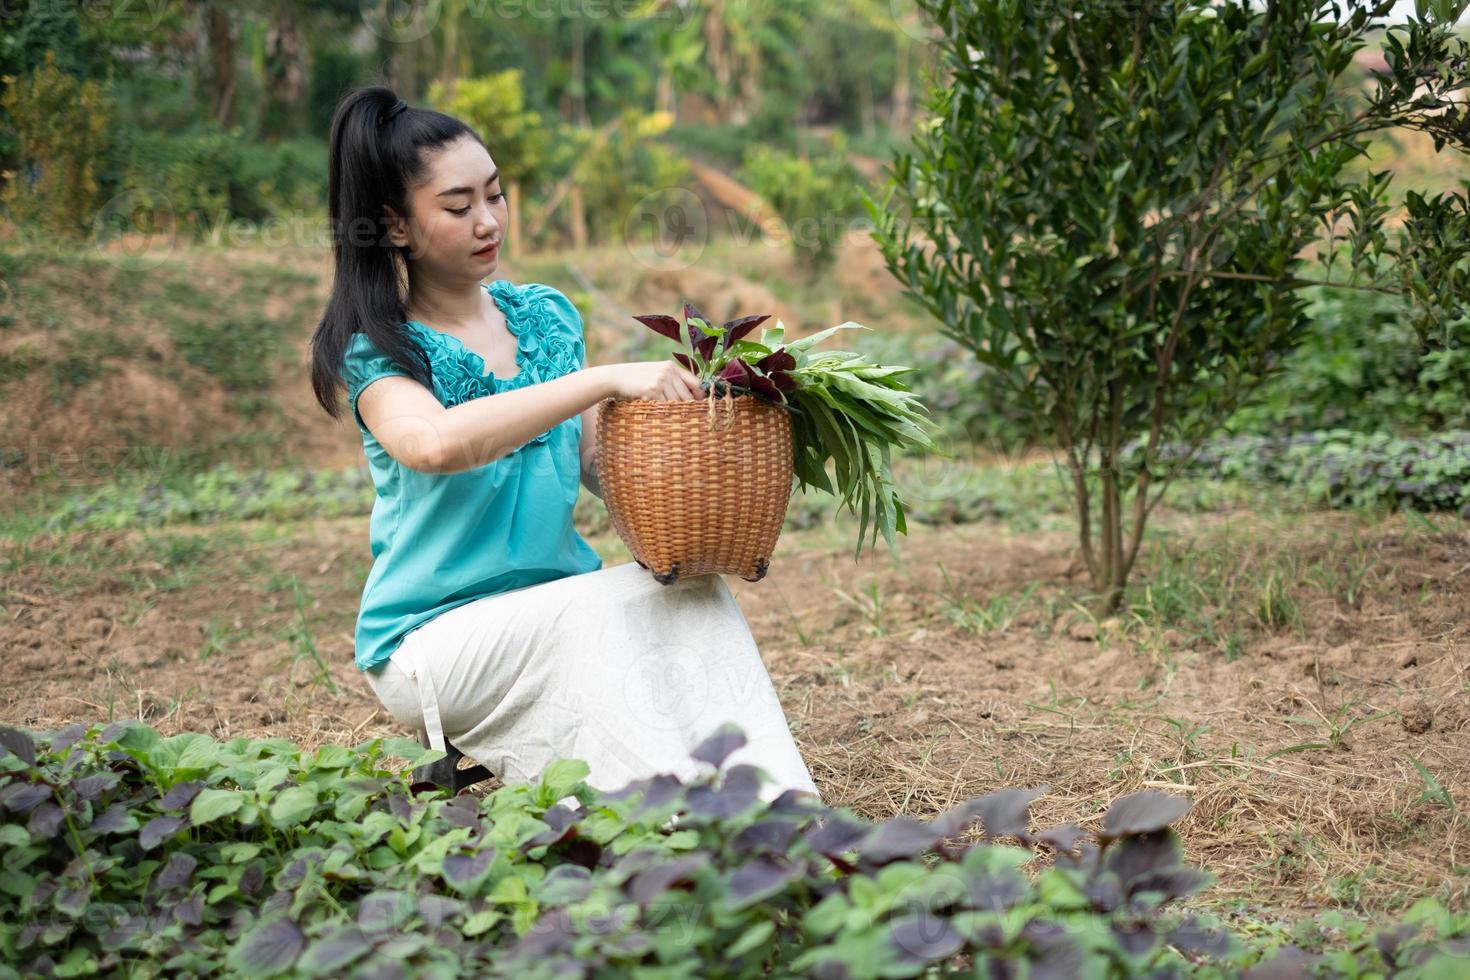 Frauen in ihrem Gemüsegarten, schöne junge Gärtnerin Asien Frau mit einem Korb mit frisch geerntetem Spinatgemüse in Gärten foto